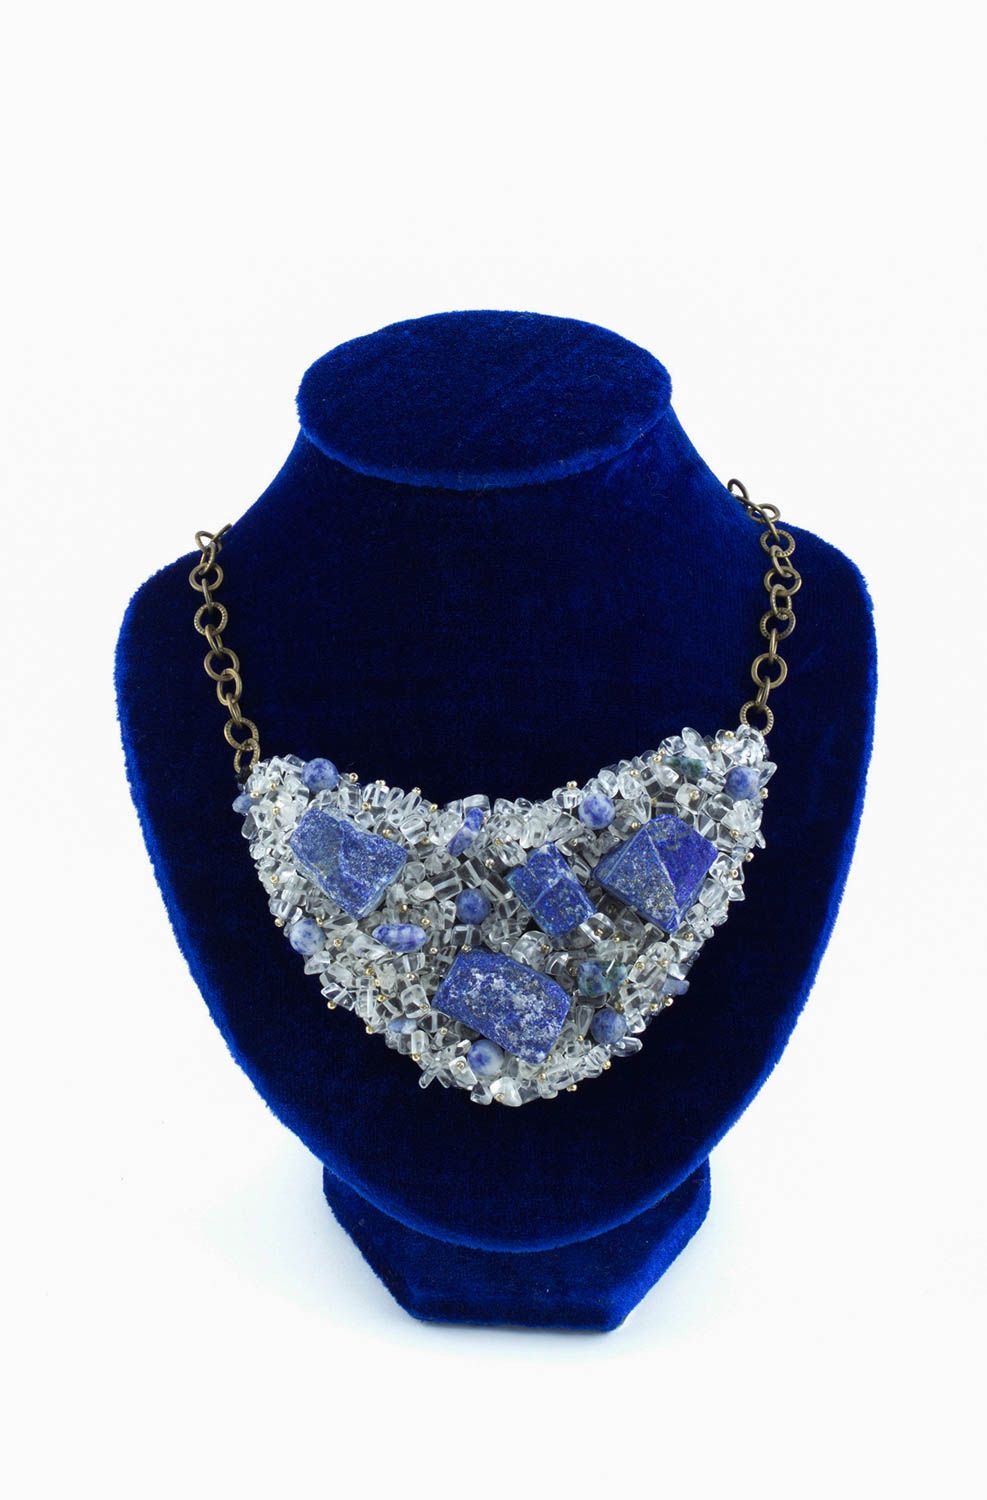 Handmade elegant cute necklace designer stylish jewelry natural stone necklace photo 2